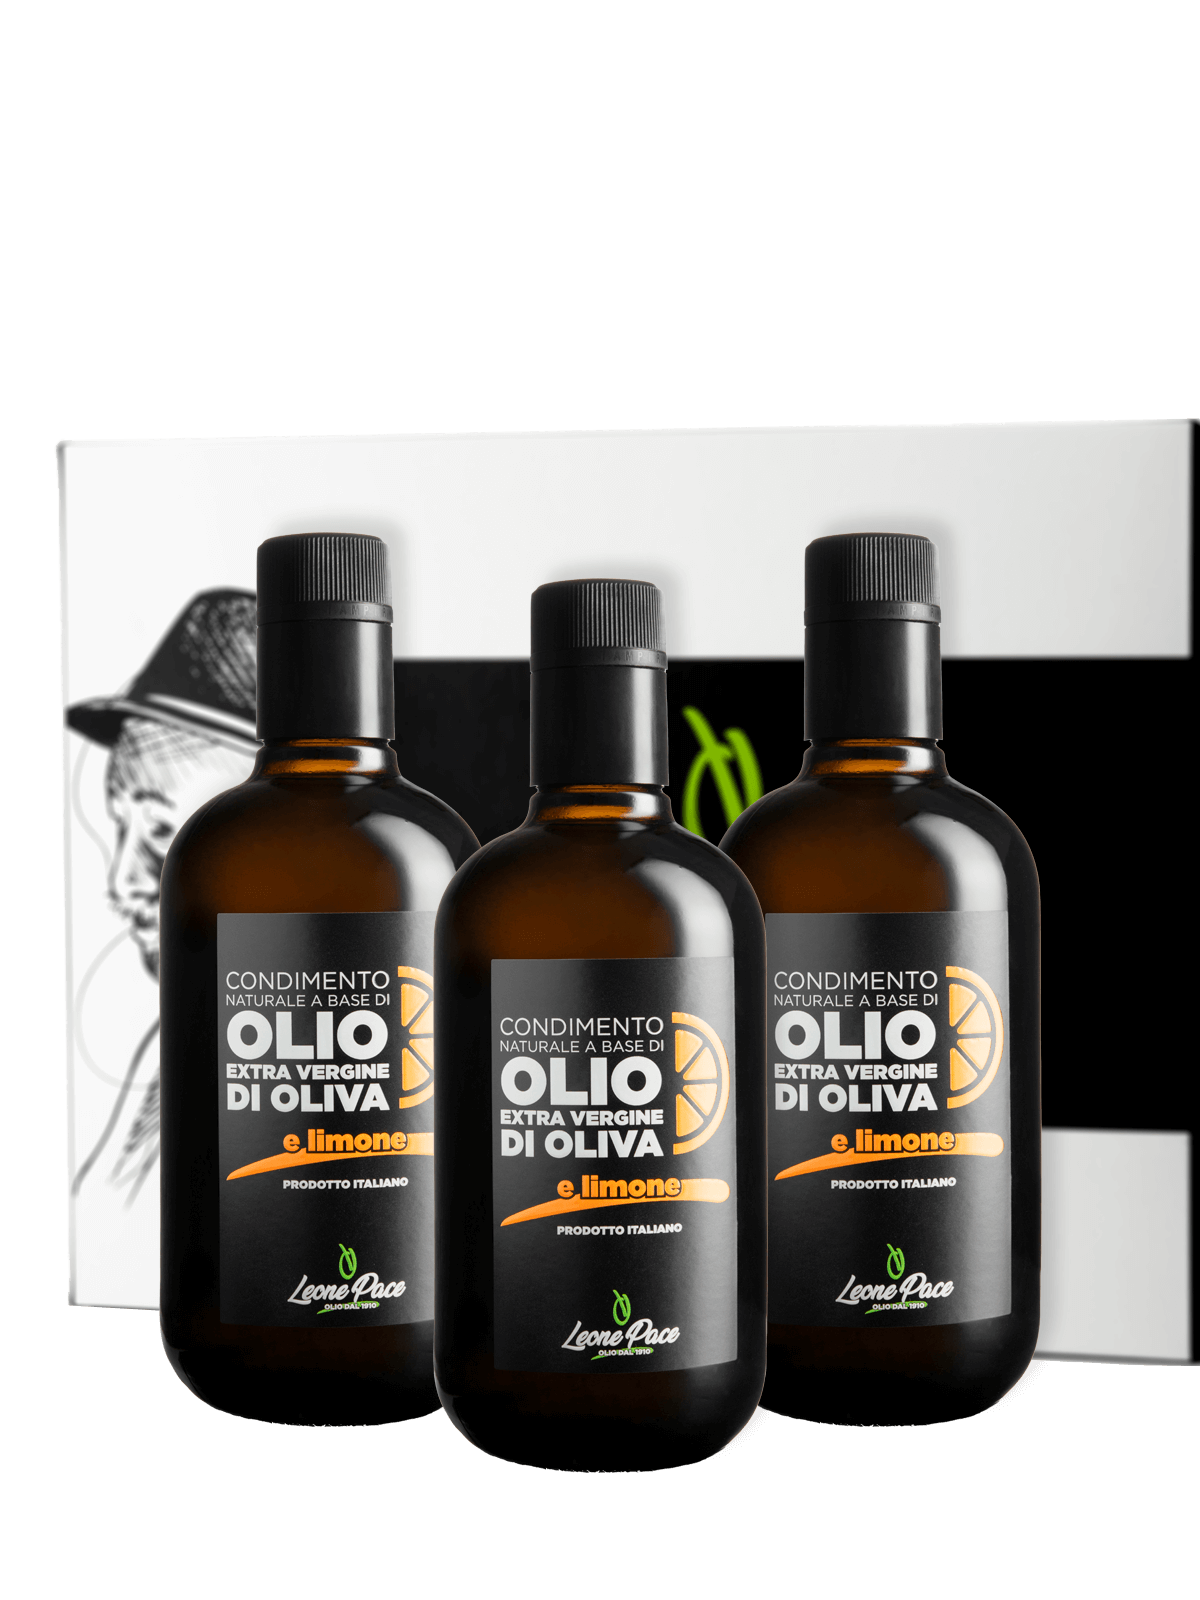 Condimento naturale a base di Olio EVO aromatizzato al limone - Prodotto a freddo - Box 3 x 0,5L - Frantoio Leone Pace